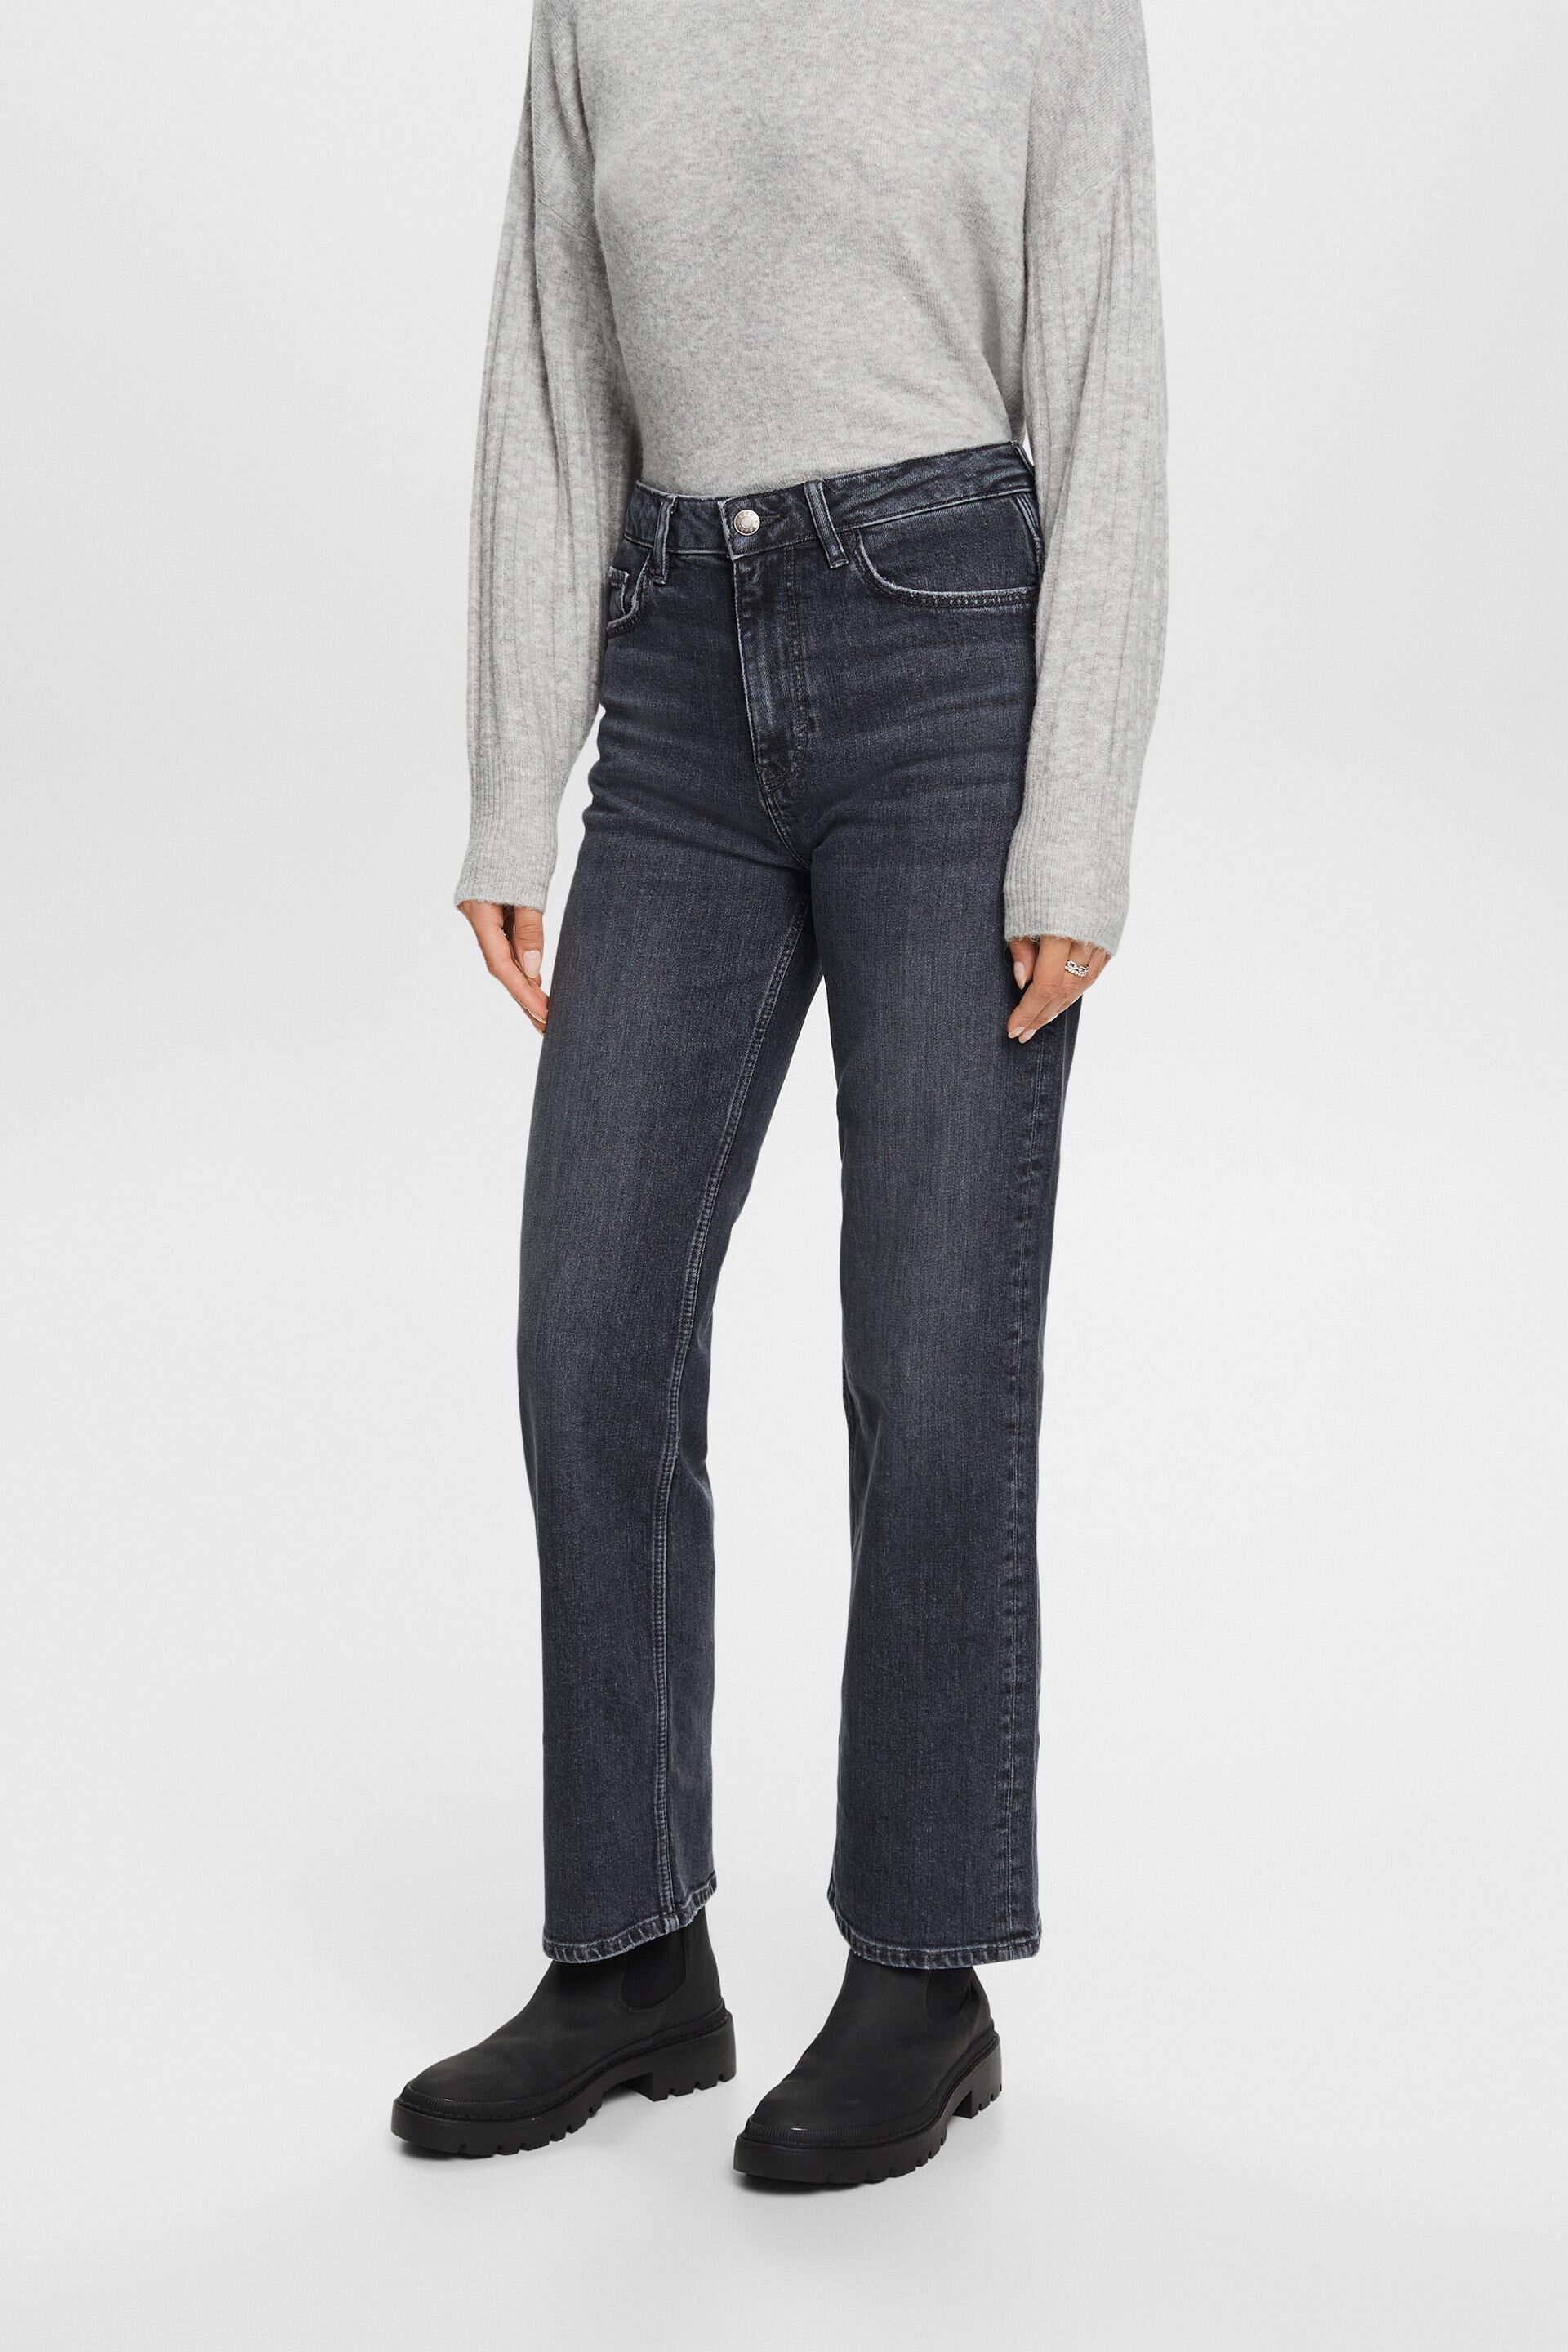 Esprit Damen Ankle length 80's straight fit jeans